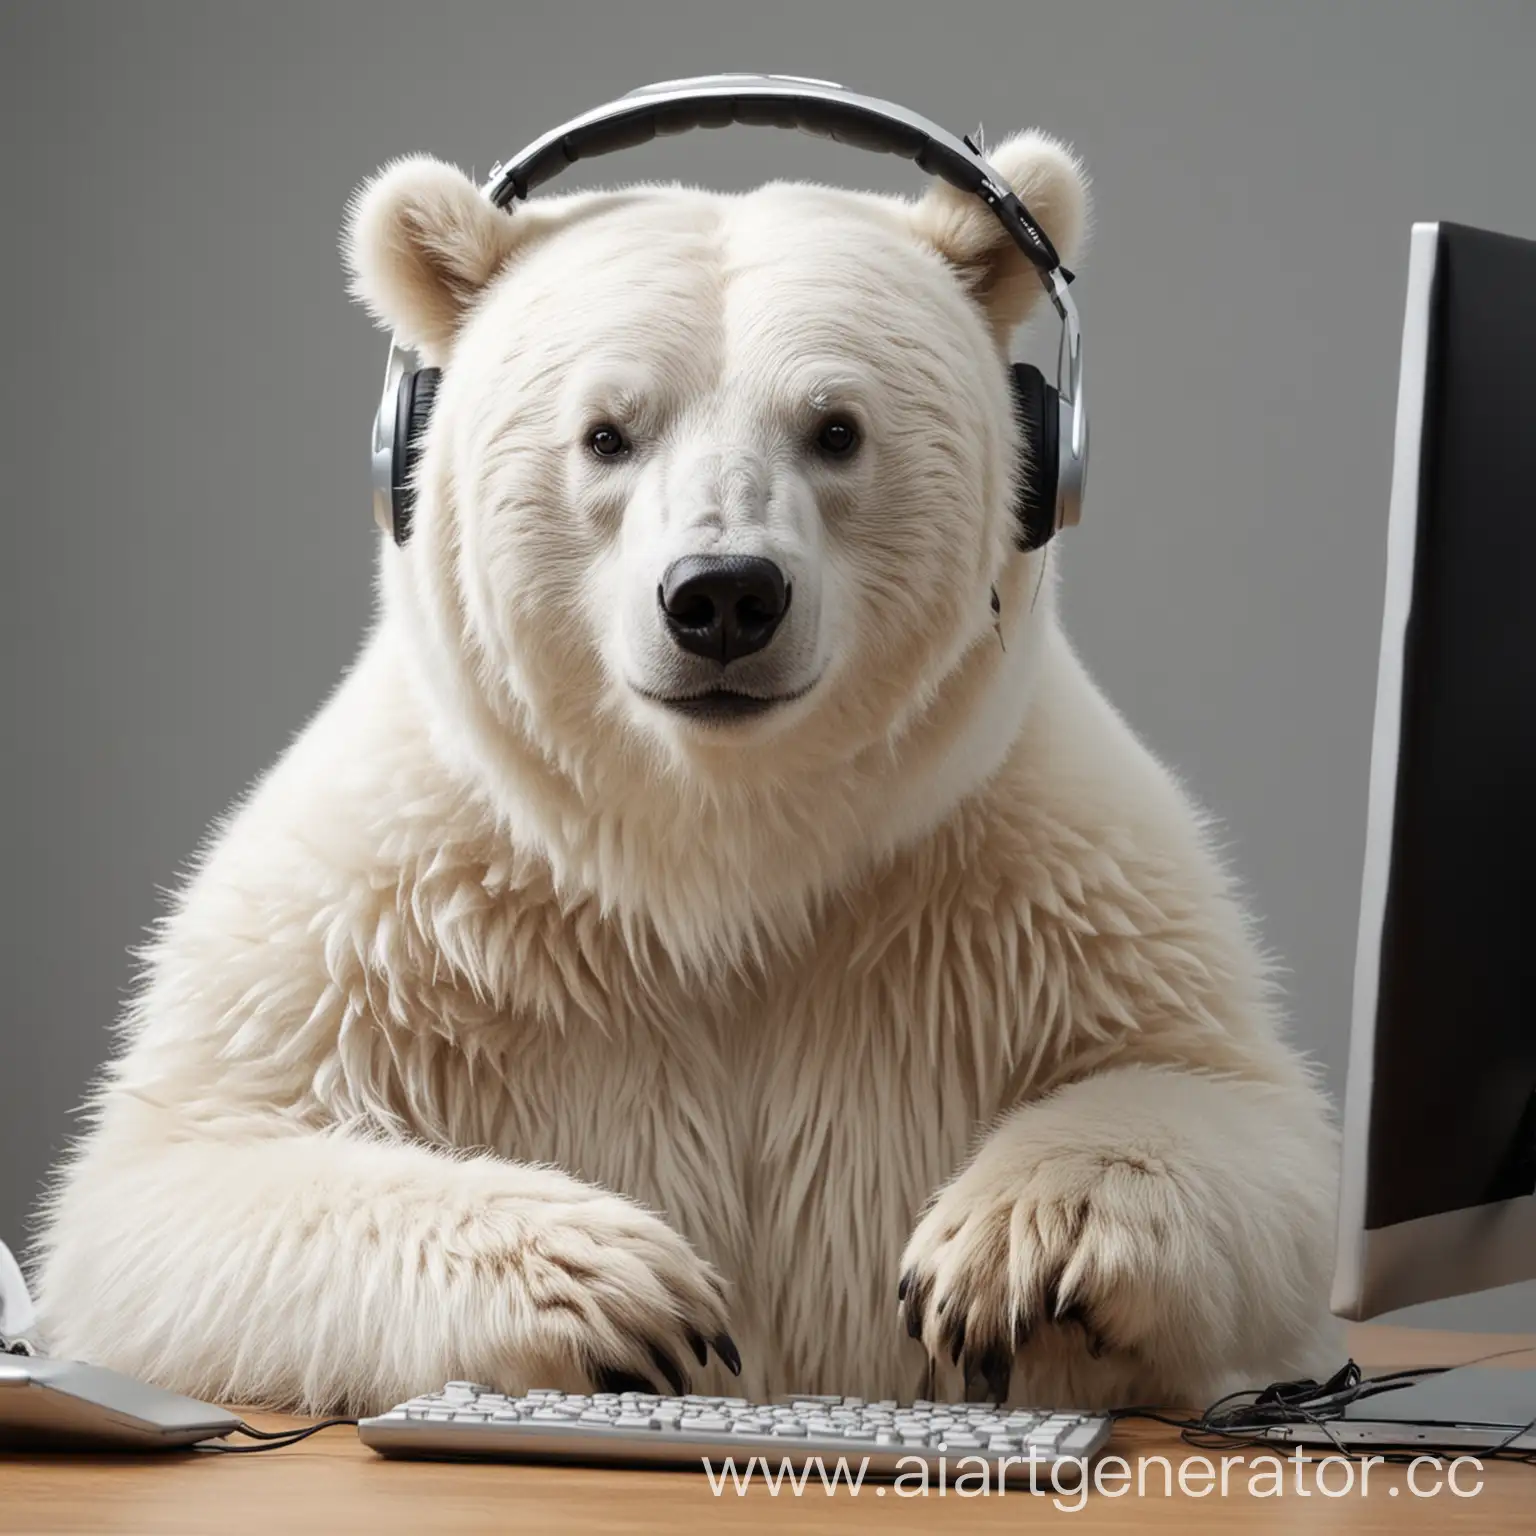 белый медведь в наушниках играет в компютер